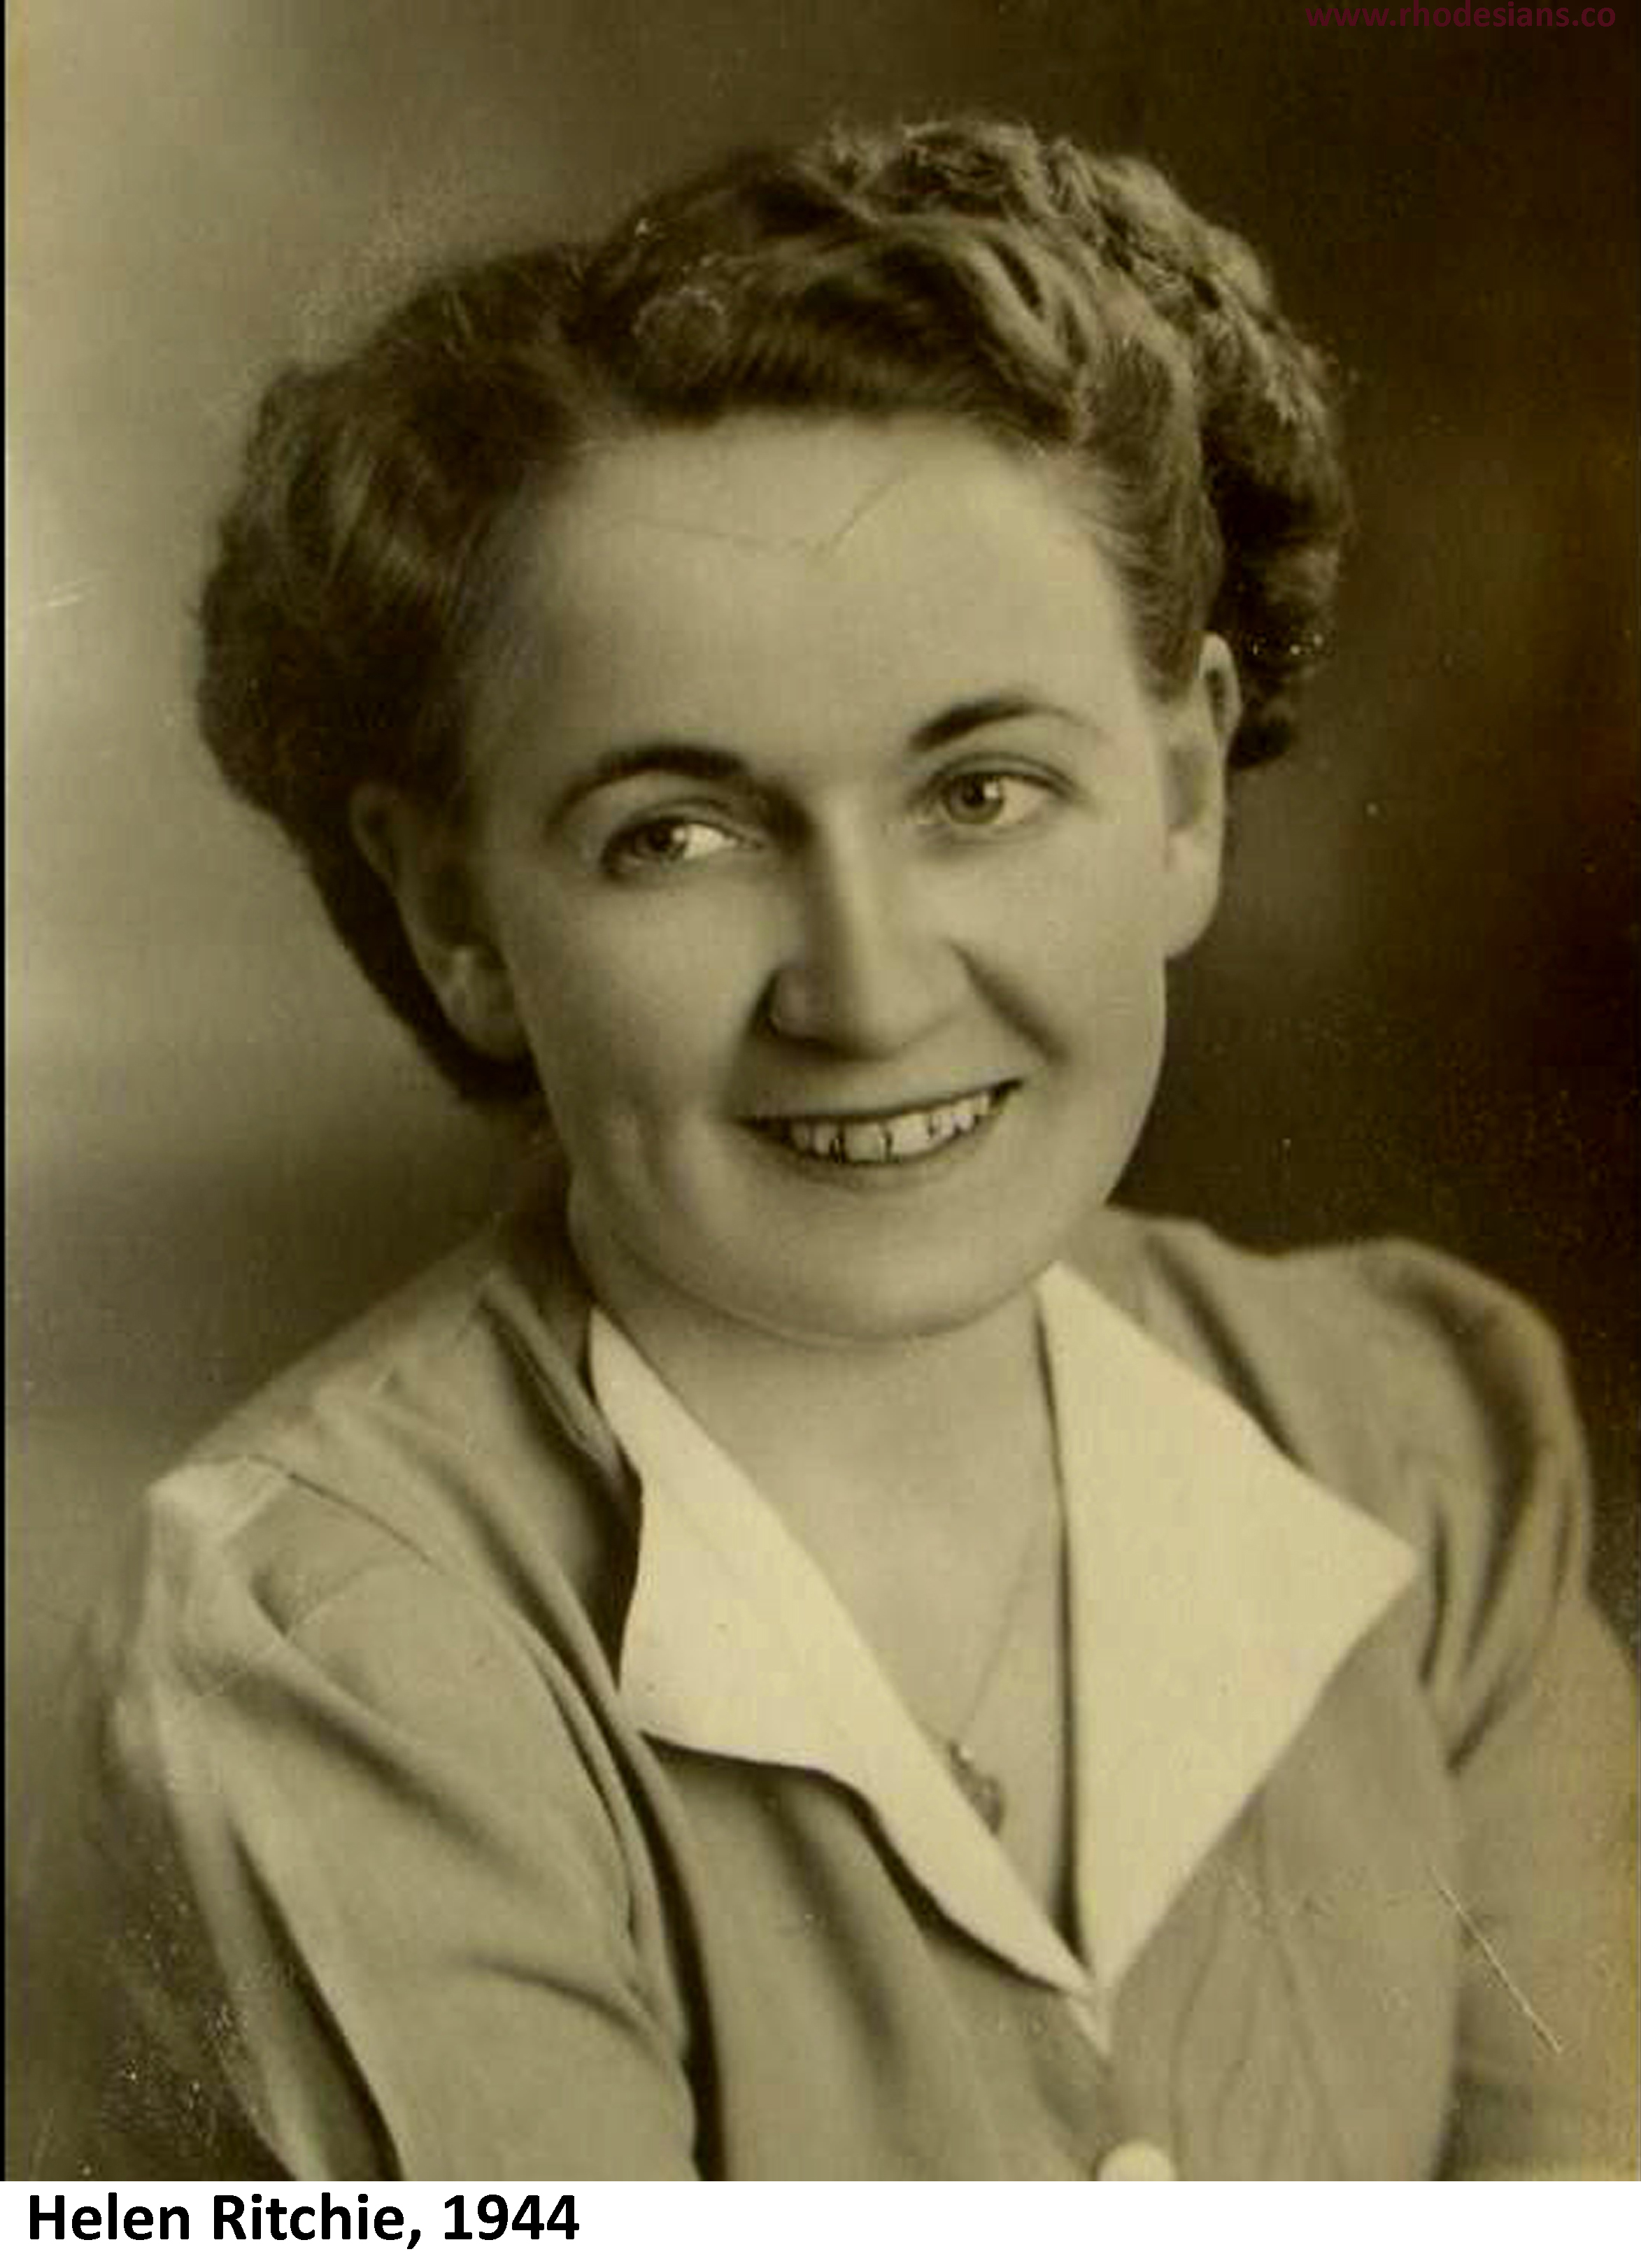 Helen Ritchie teacher in Salisbury in 1944